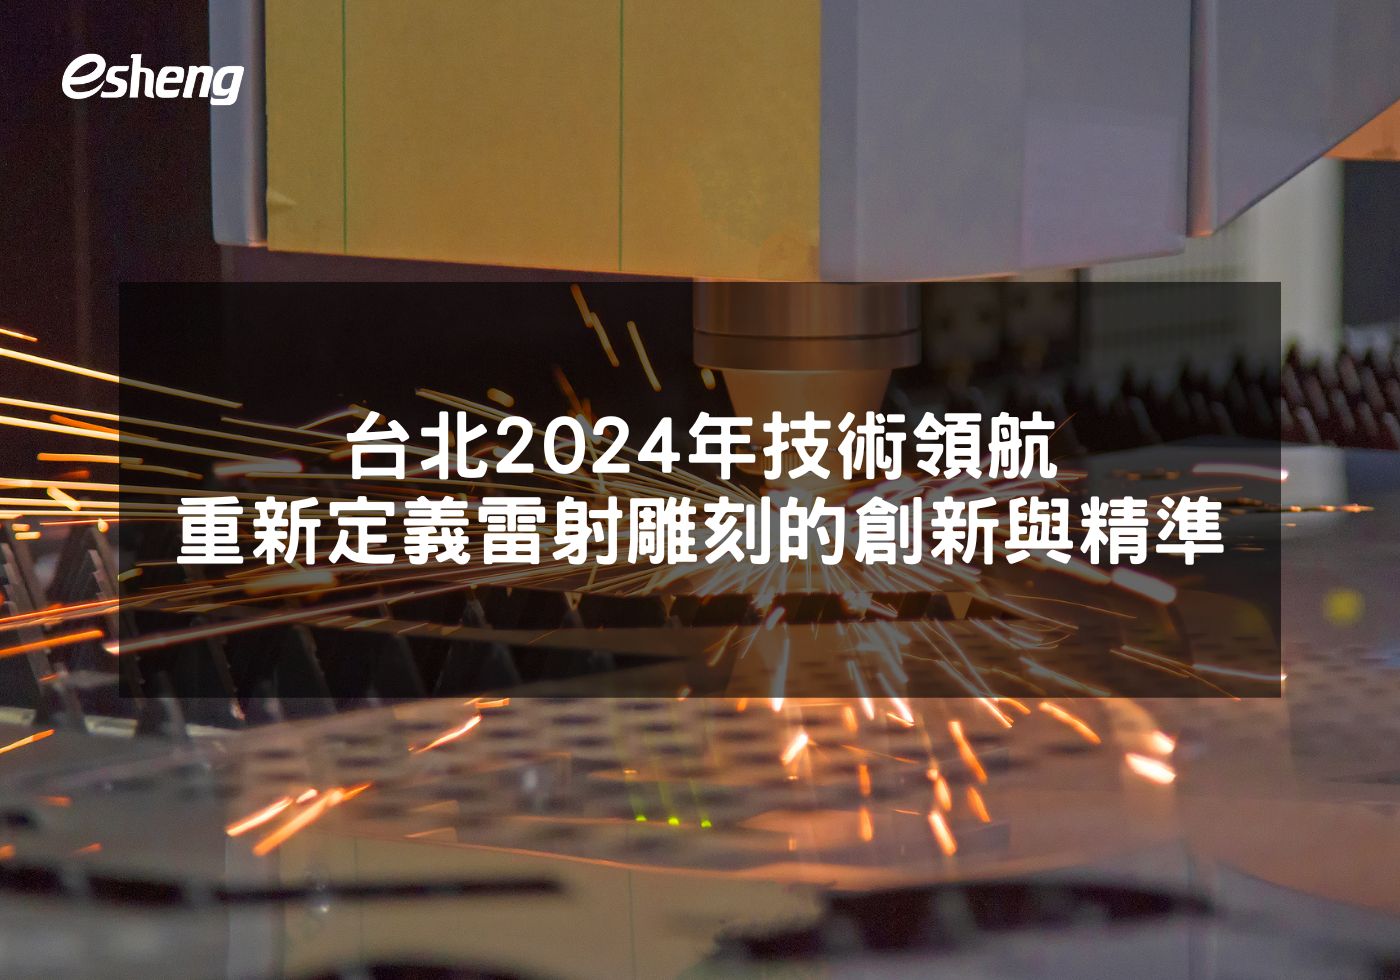 台北2024年技術領航 重新定義雷射雕刻的創新與精準